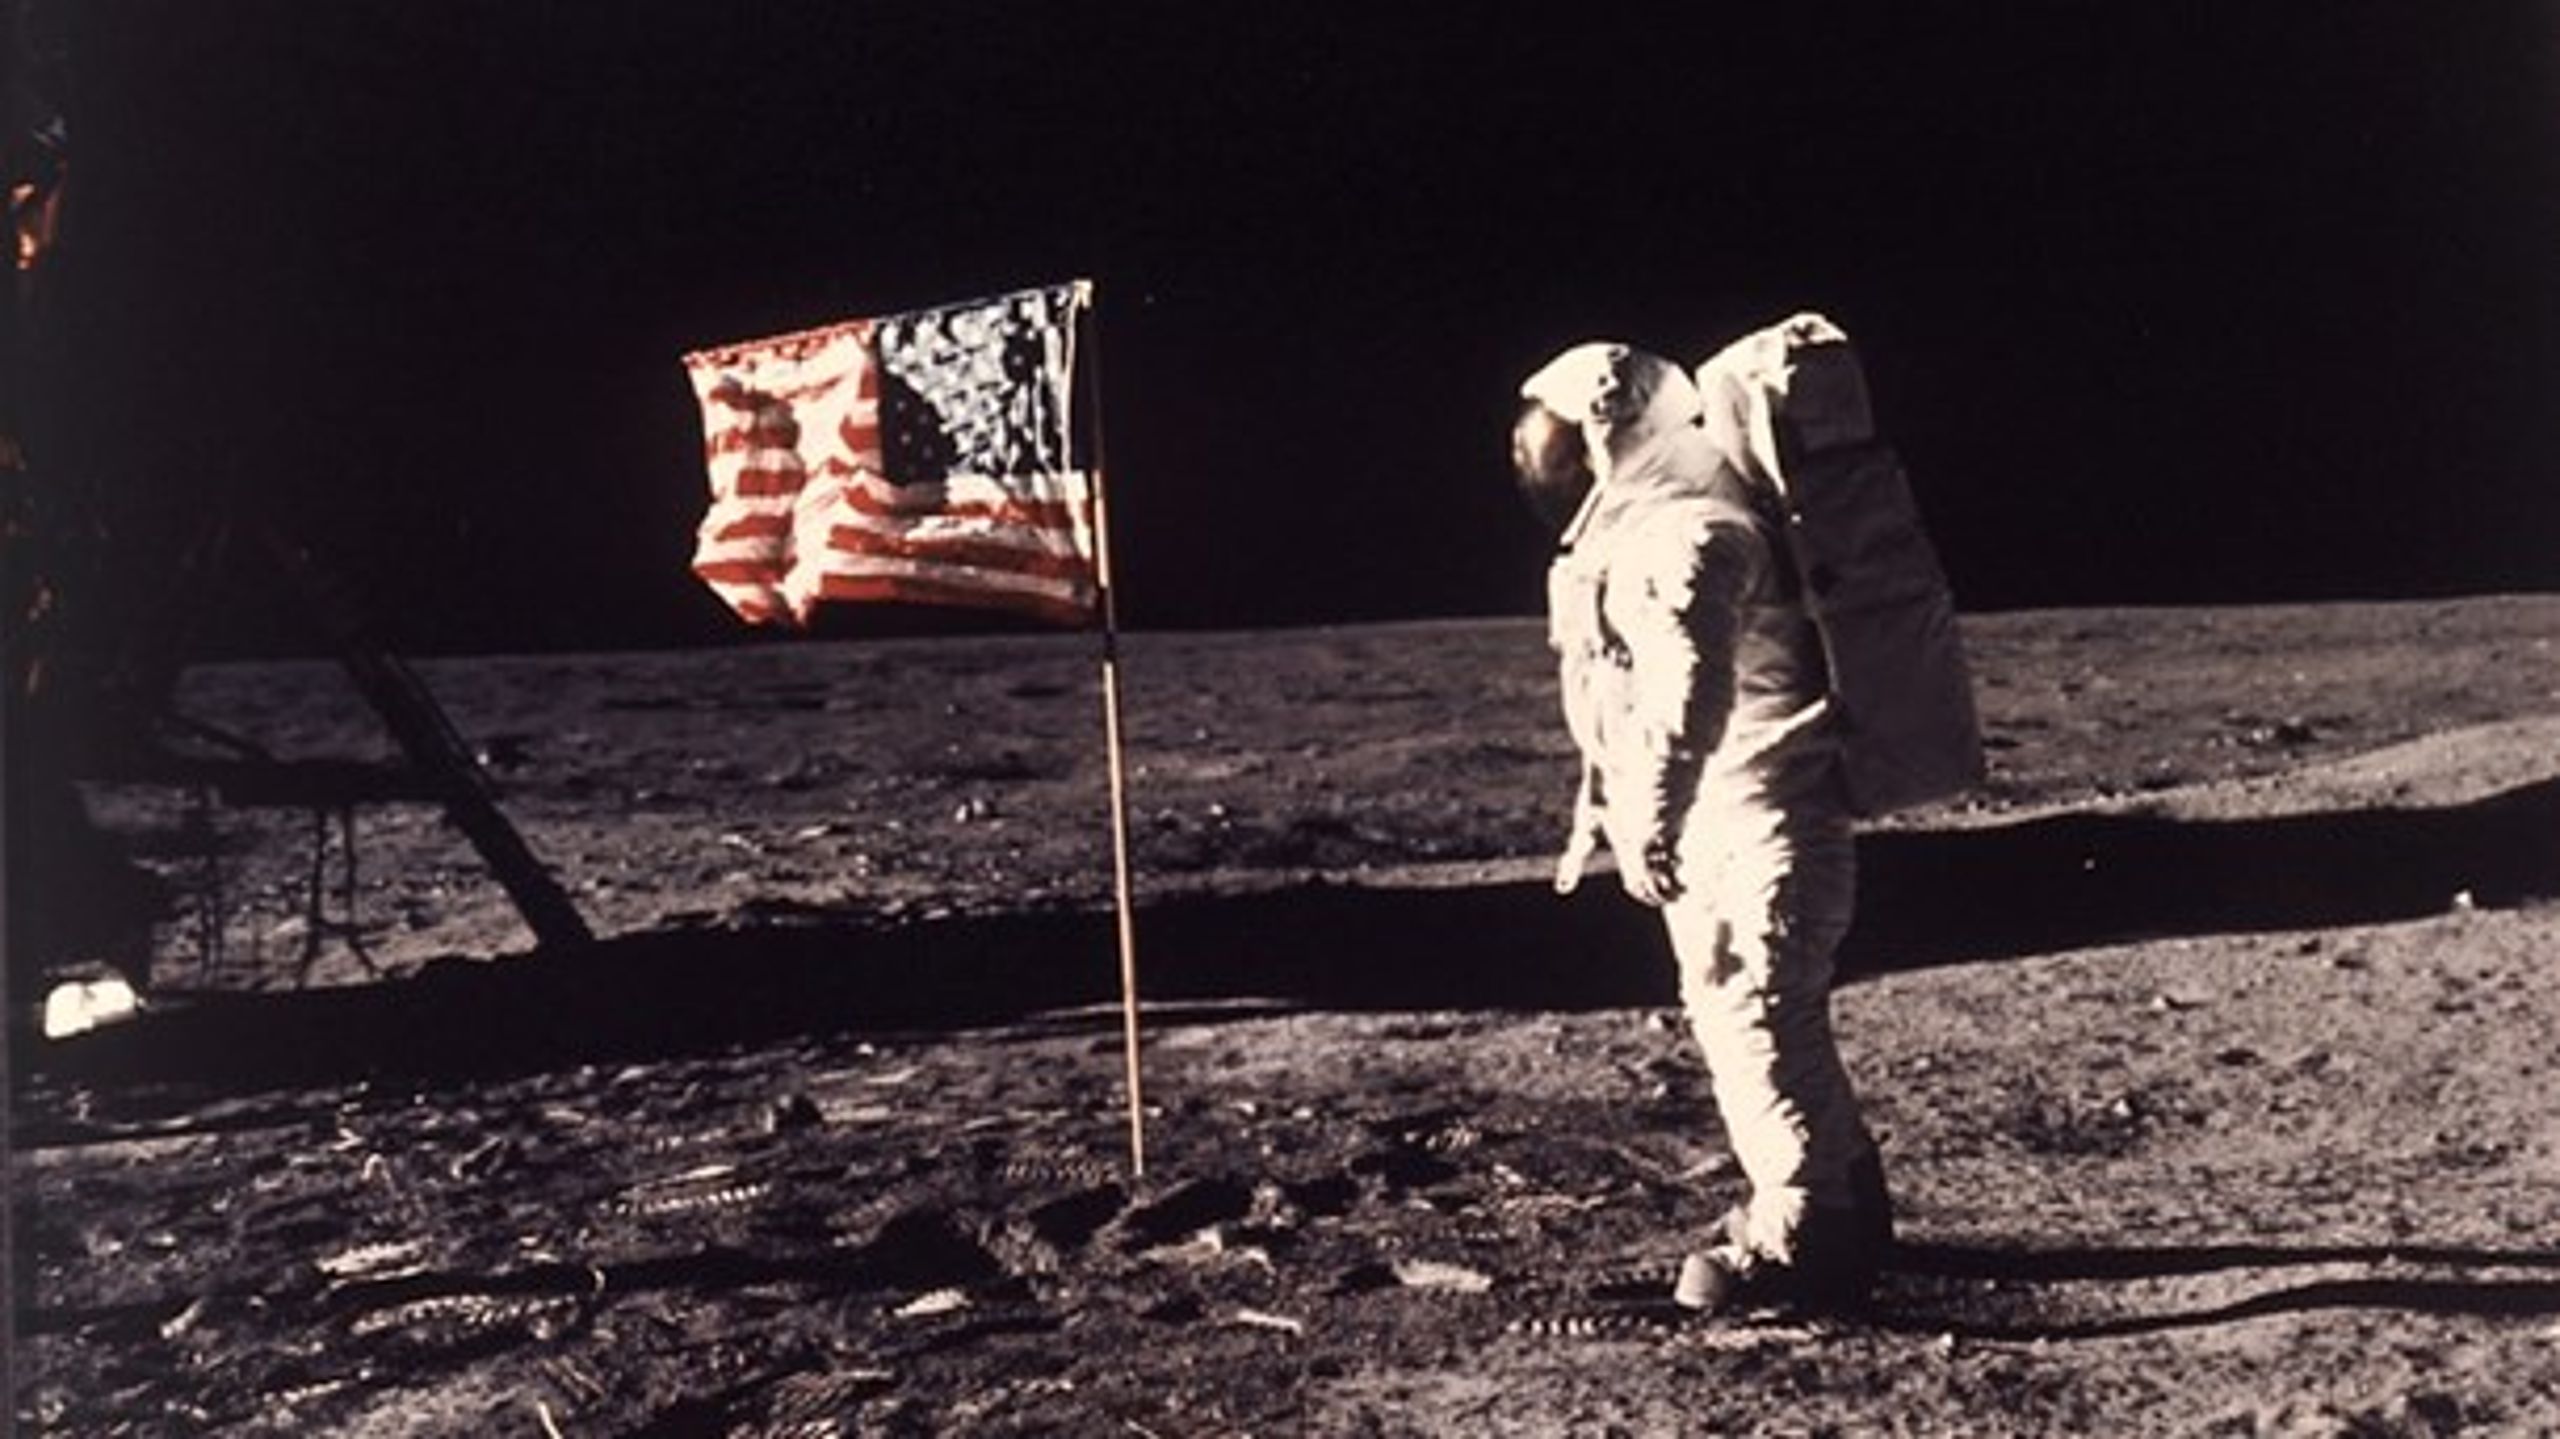 Neil Armstrong fotograferar sin kollega&nbsp;Edwin E. "Buzz" Aldrin Jr. Månlandningen är ett bra exempel på hur beslutsfattare kan sätta ett forskningspolitiskt mål för att sedan nå det, menar debattören.&nbsp;